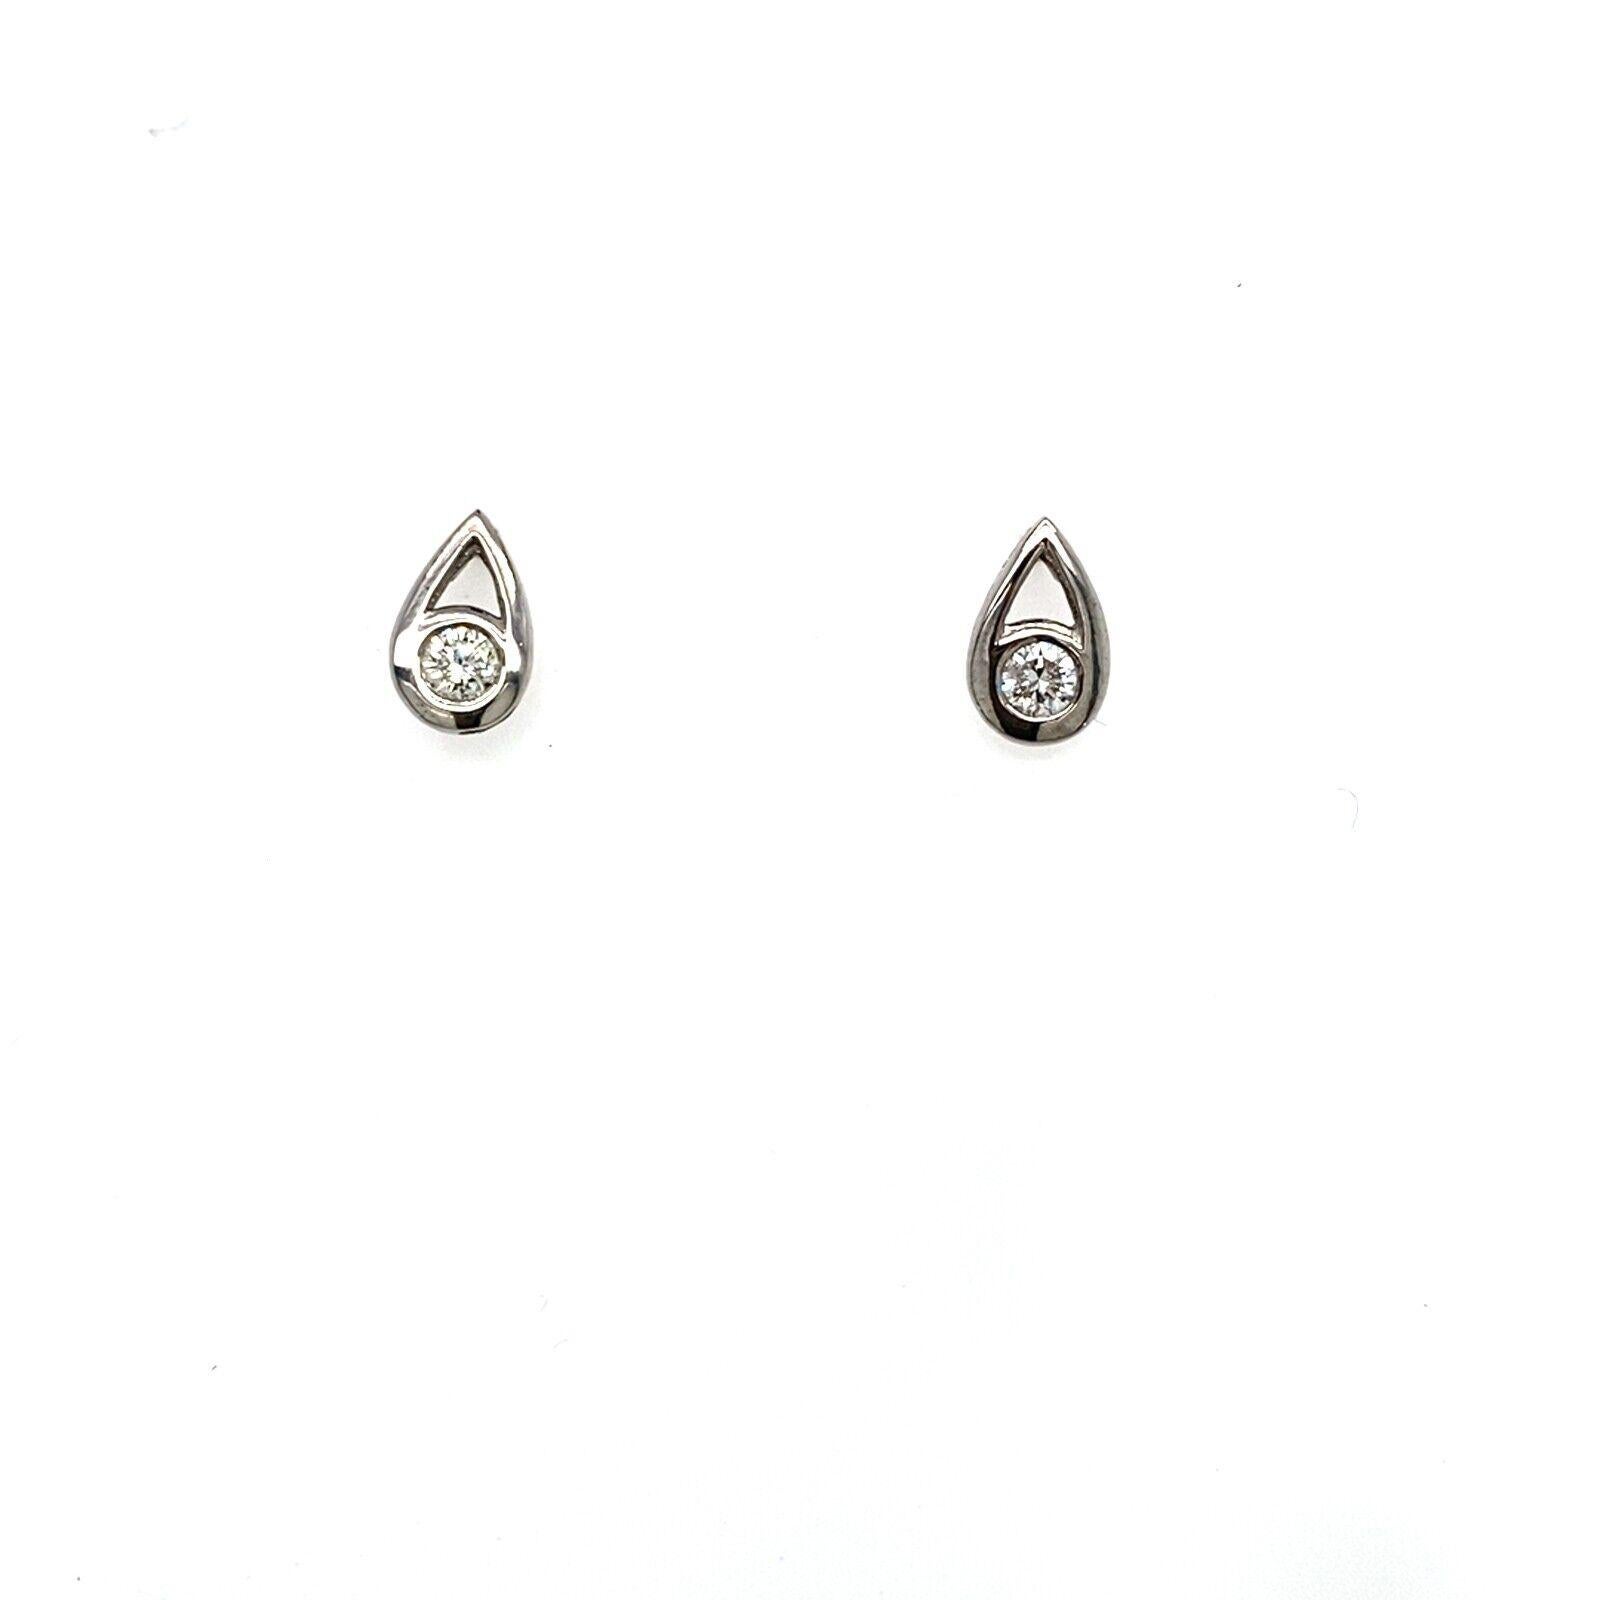 Dieses Paar birnenförmige Diamantohrringe besteht aus insgesamt 0,30 Karat runden Diamanten im Brillantschliff, die in 18 Karat Weißgold gefasst sind. Er ist elegant, klassisch und zeitlos. Er ist perfekt für den Alltag und kann zu jedem Outfit